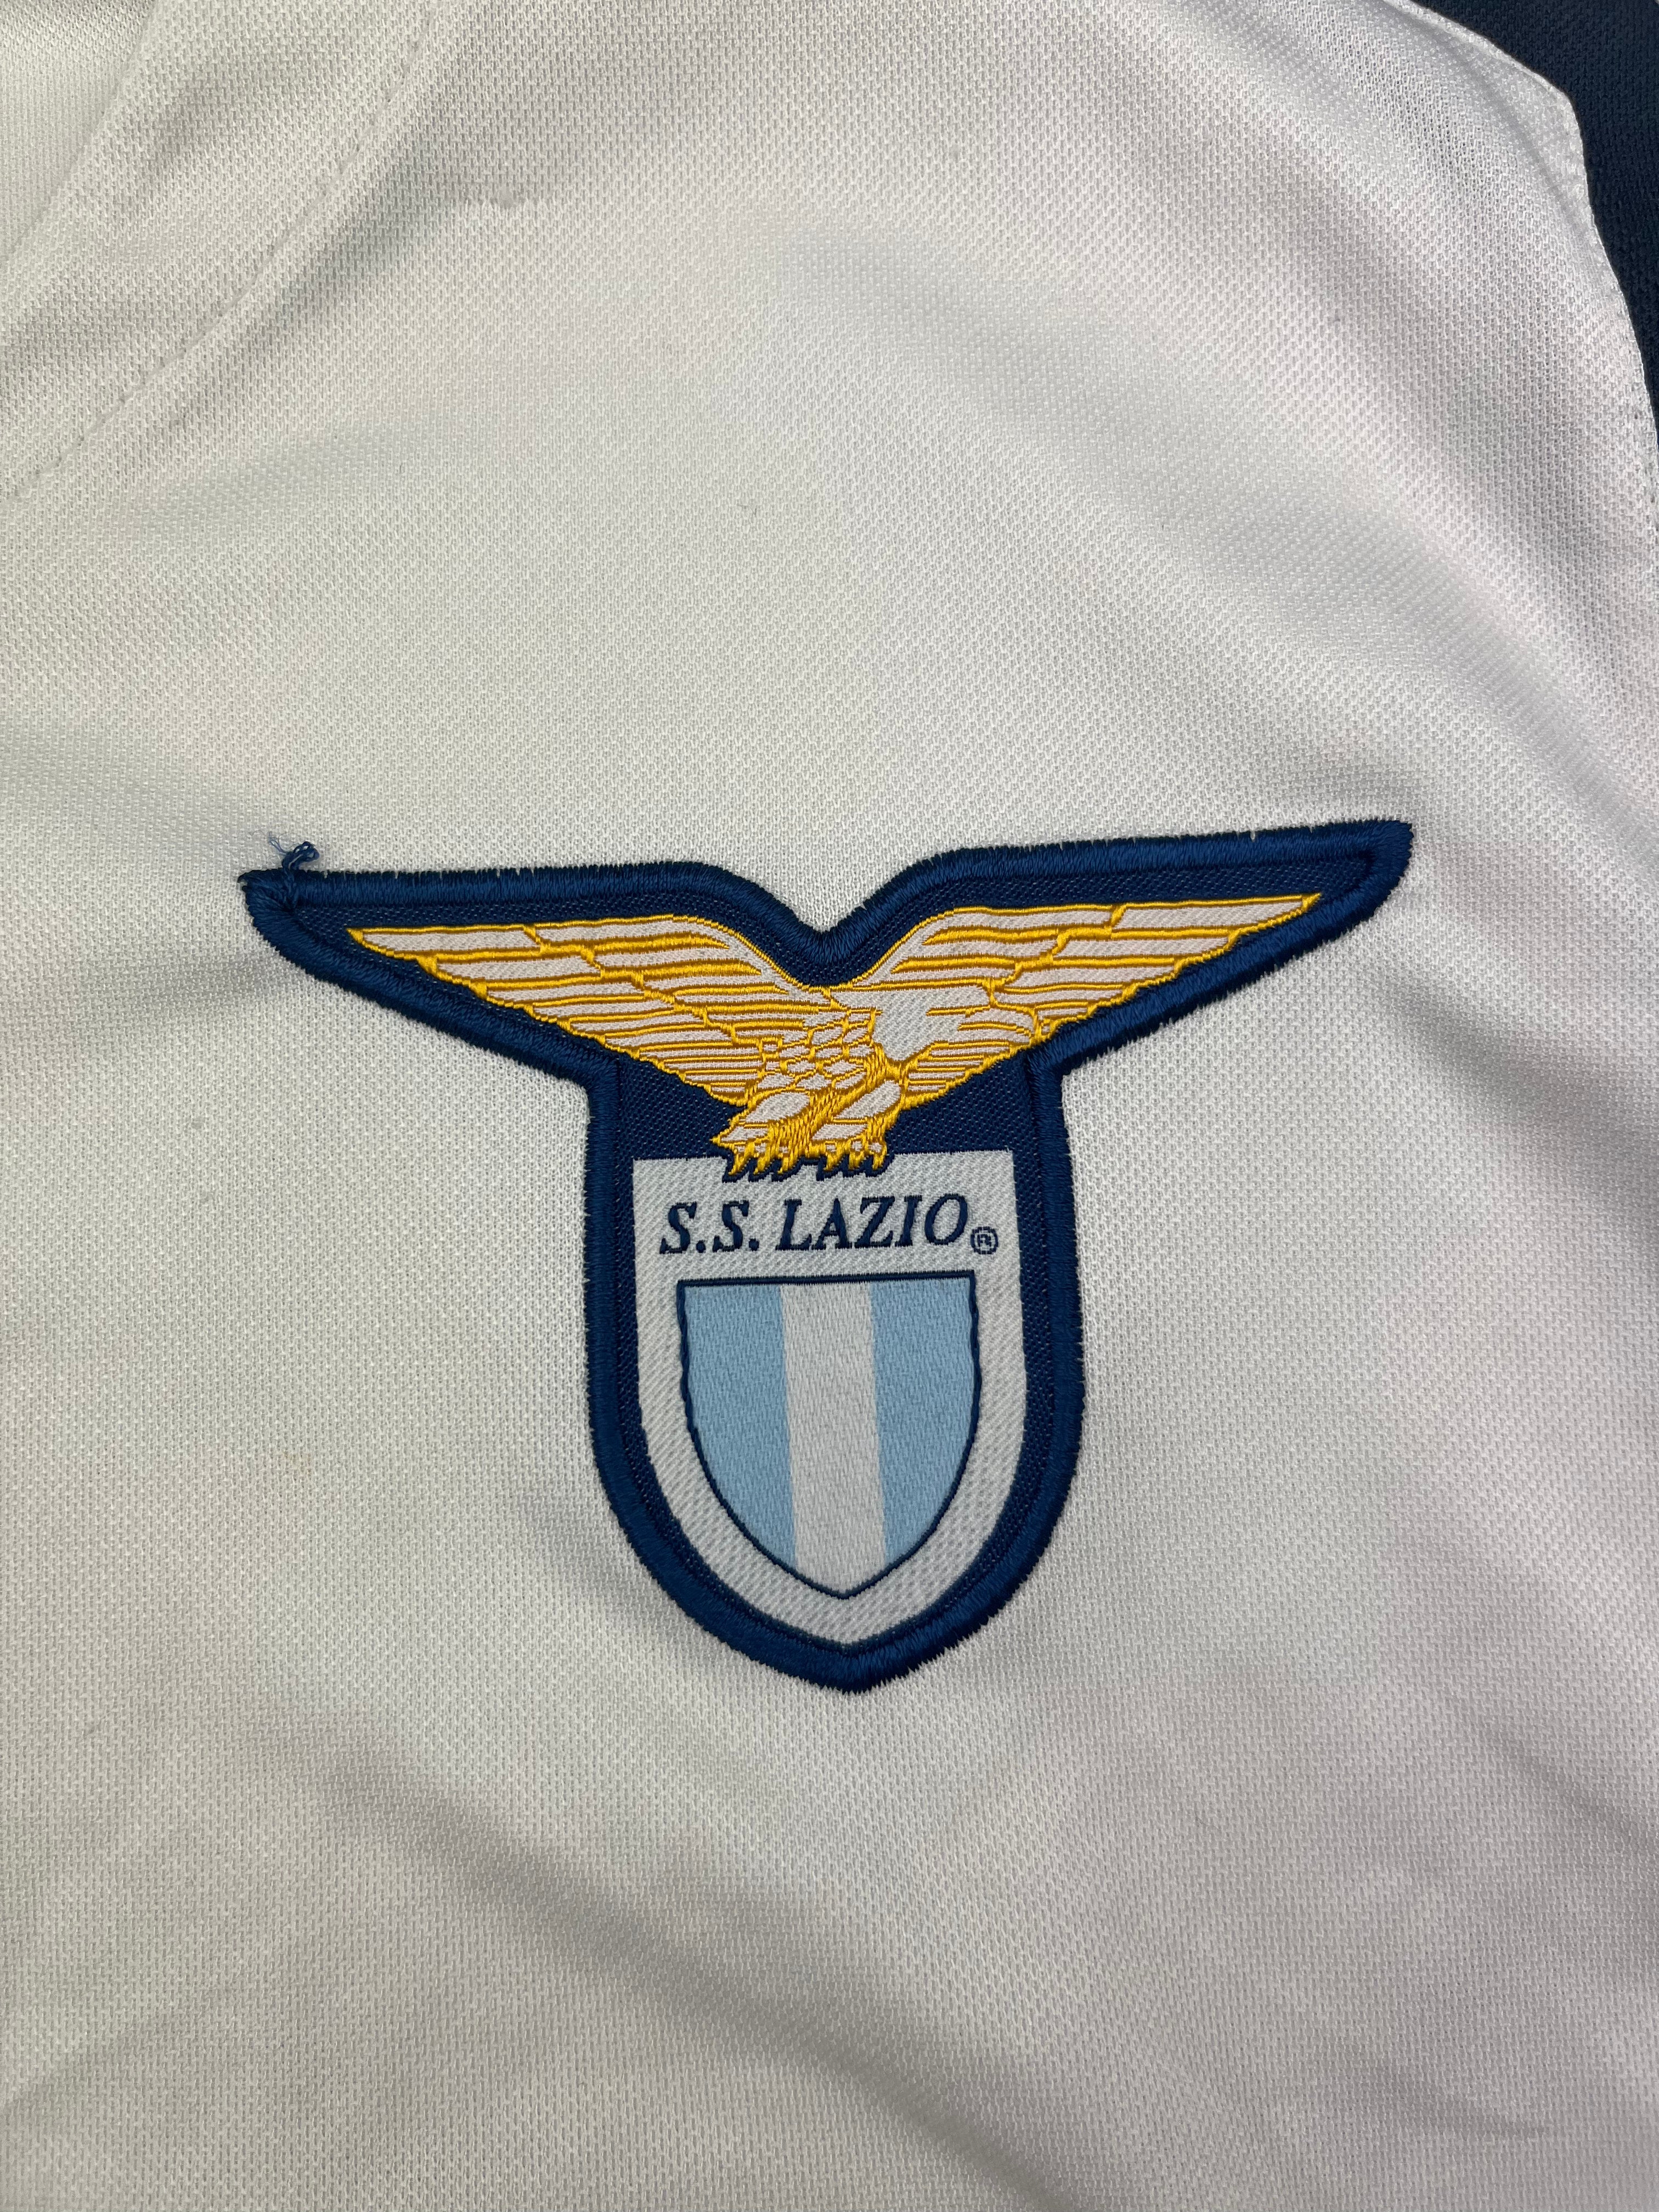 2004/05 Lazio Away Shirt (L) 6/10